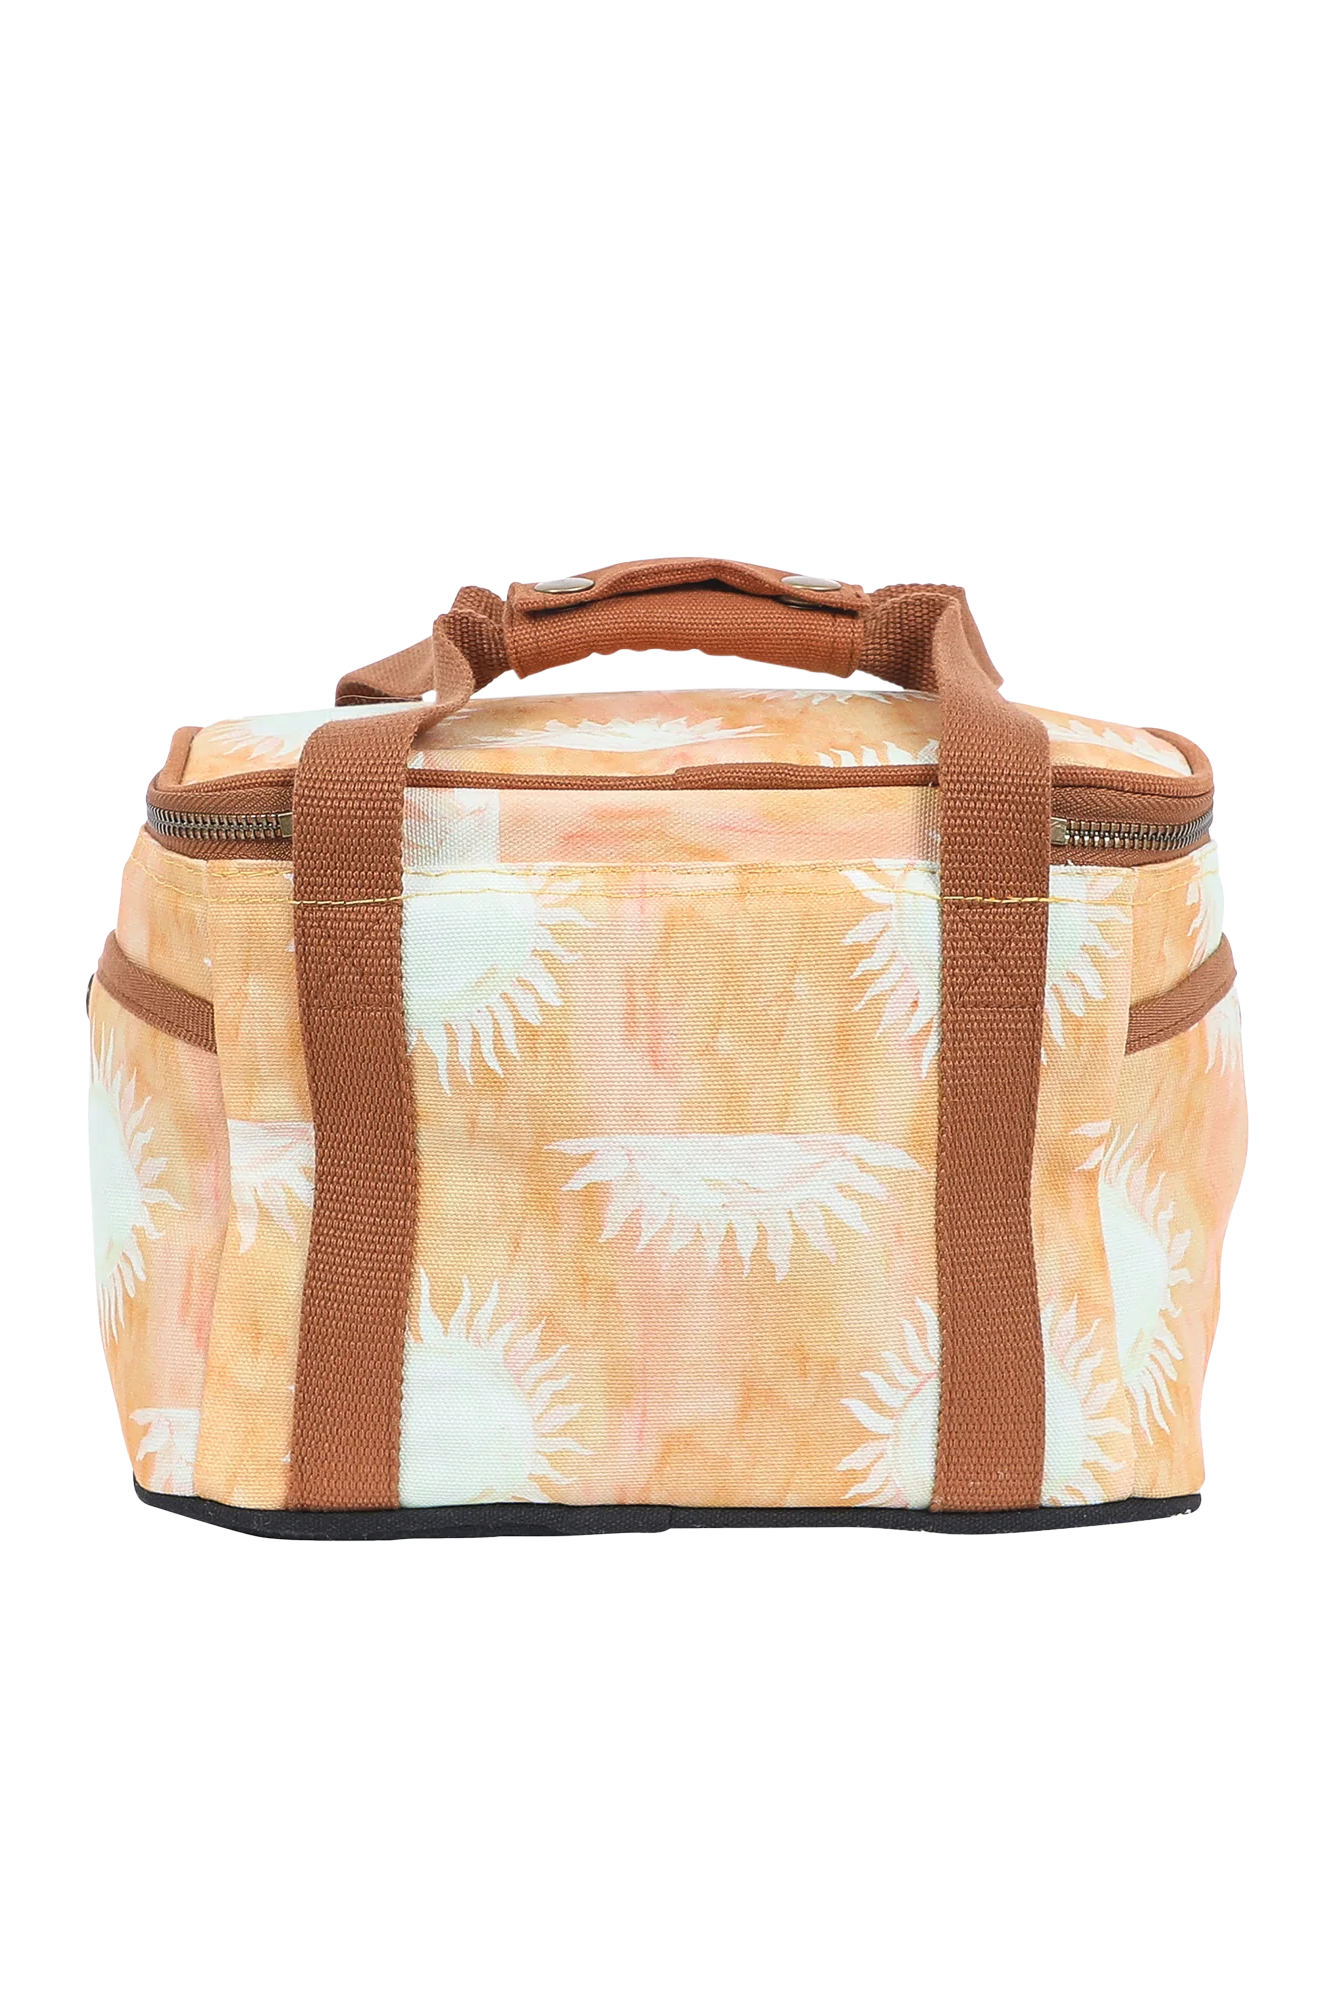 Cooler Bag Mini - Sol